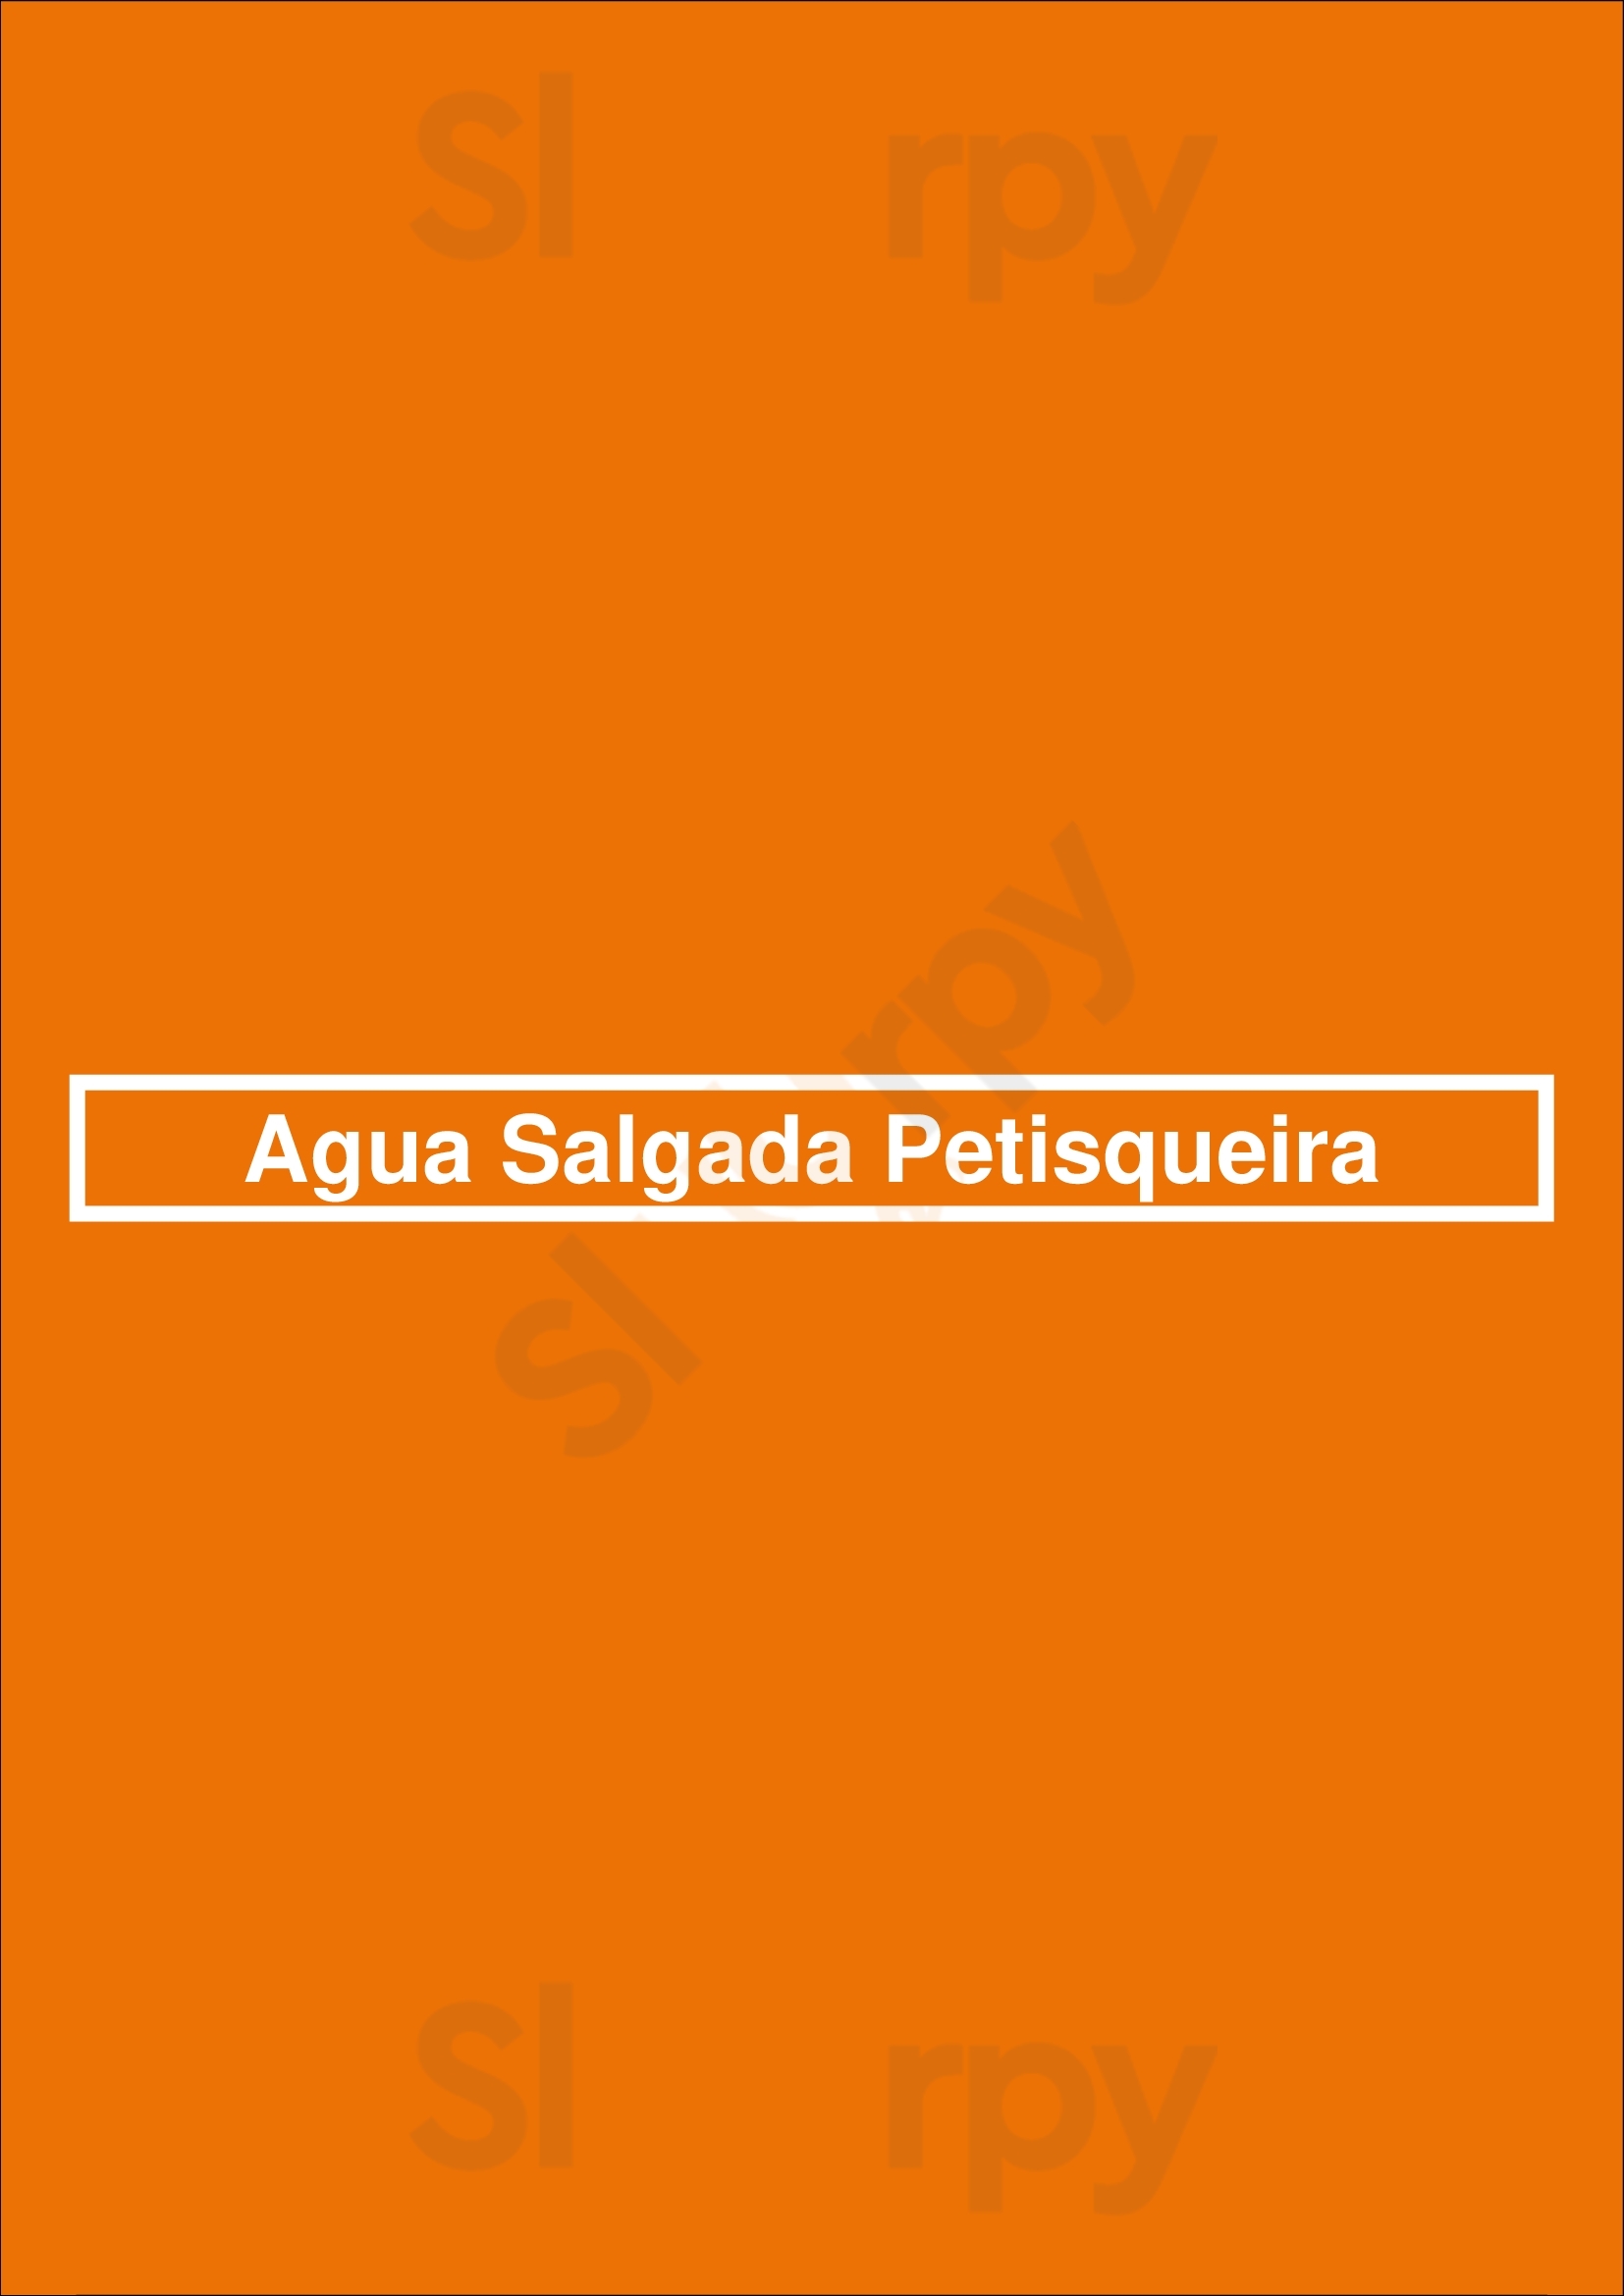 Água Salgada Marisqueira - Tavira Tavira Menu - 1